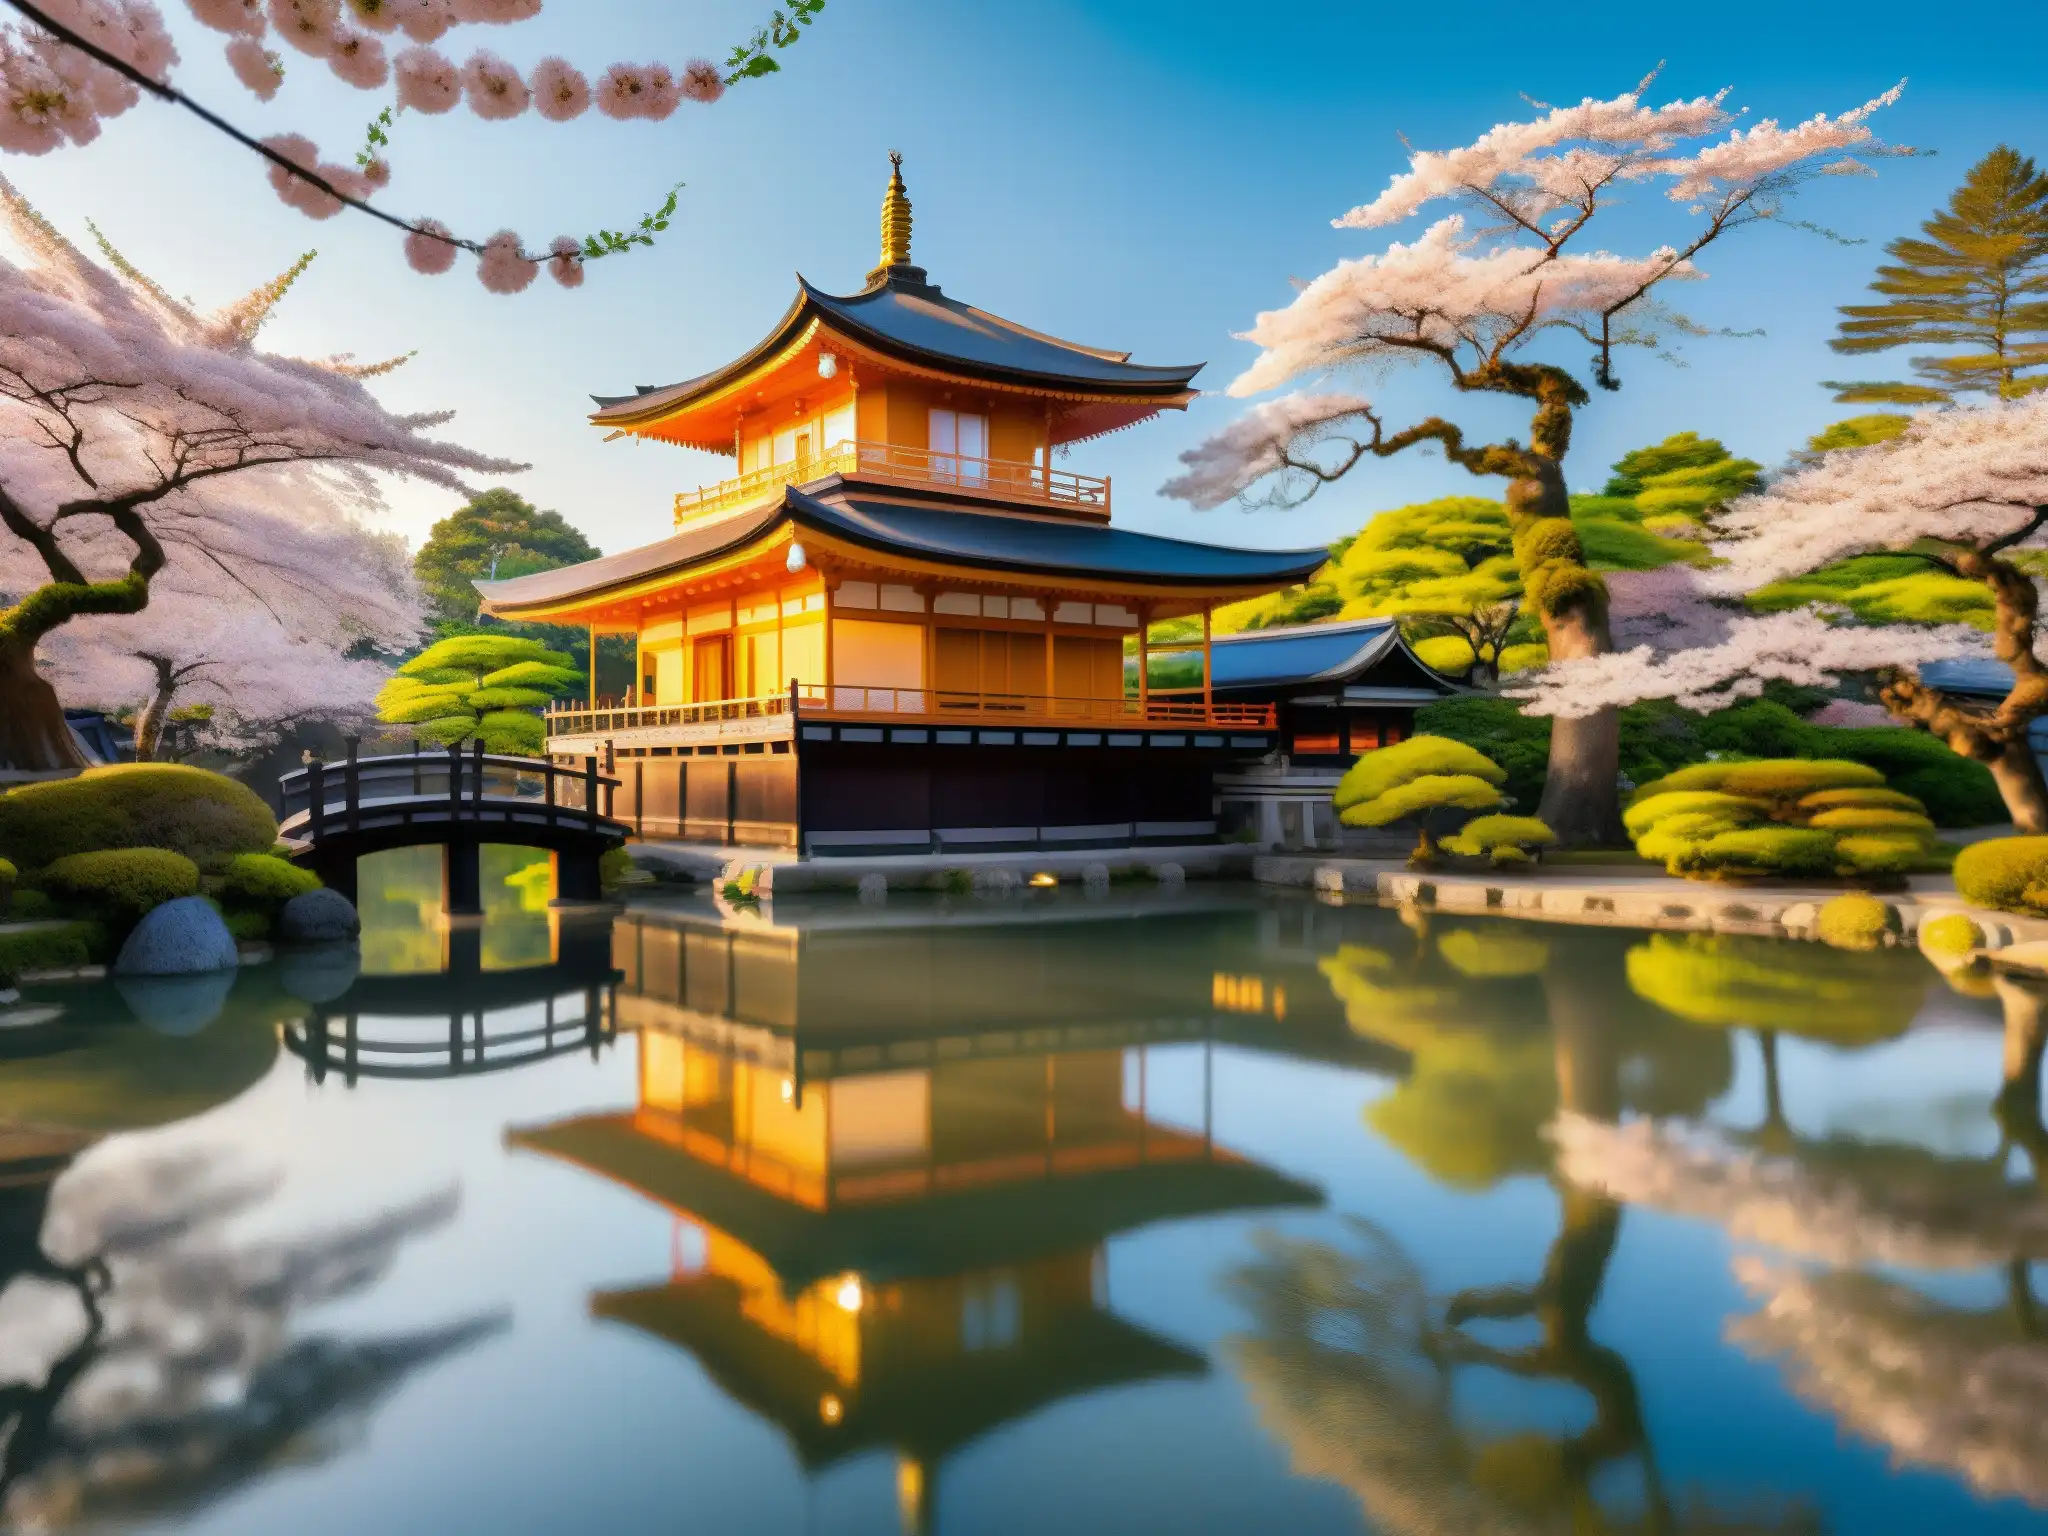 Templo japonés antiguo rodeado de cerezos en flor y un estanque sereno